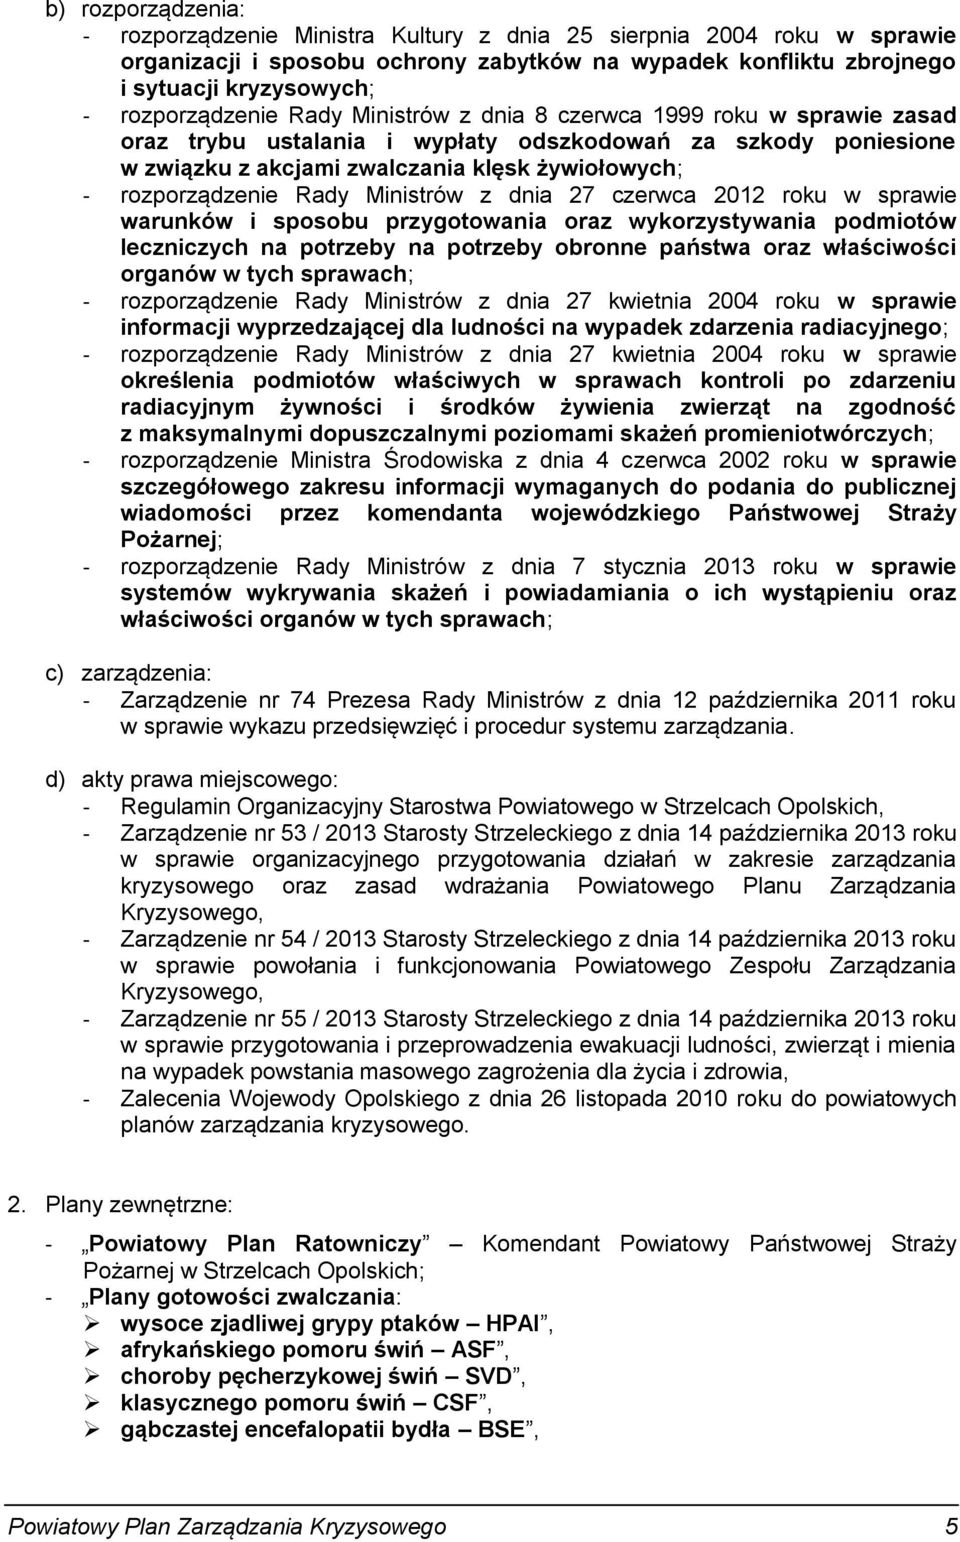 rozporządzenie Rady Ministrów z dnia 27 czerwca 2012 roku w sprawie warunków i sposobu przygotowania oraz wykorzystywania podmiotów leczniczych na potrzeby na potrzeby obronne państwa oraz